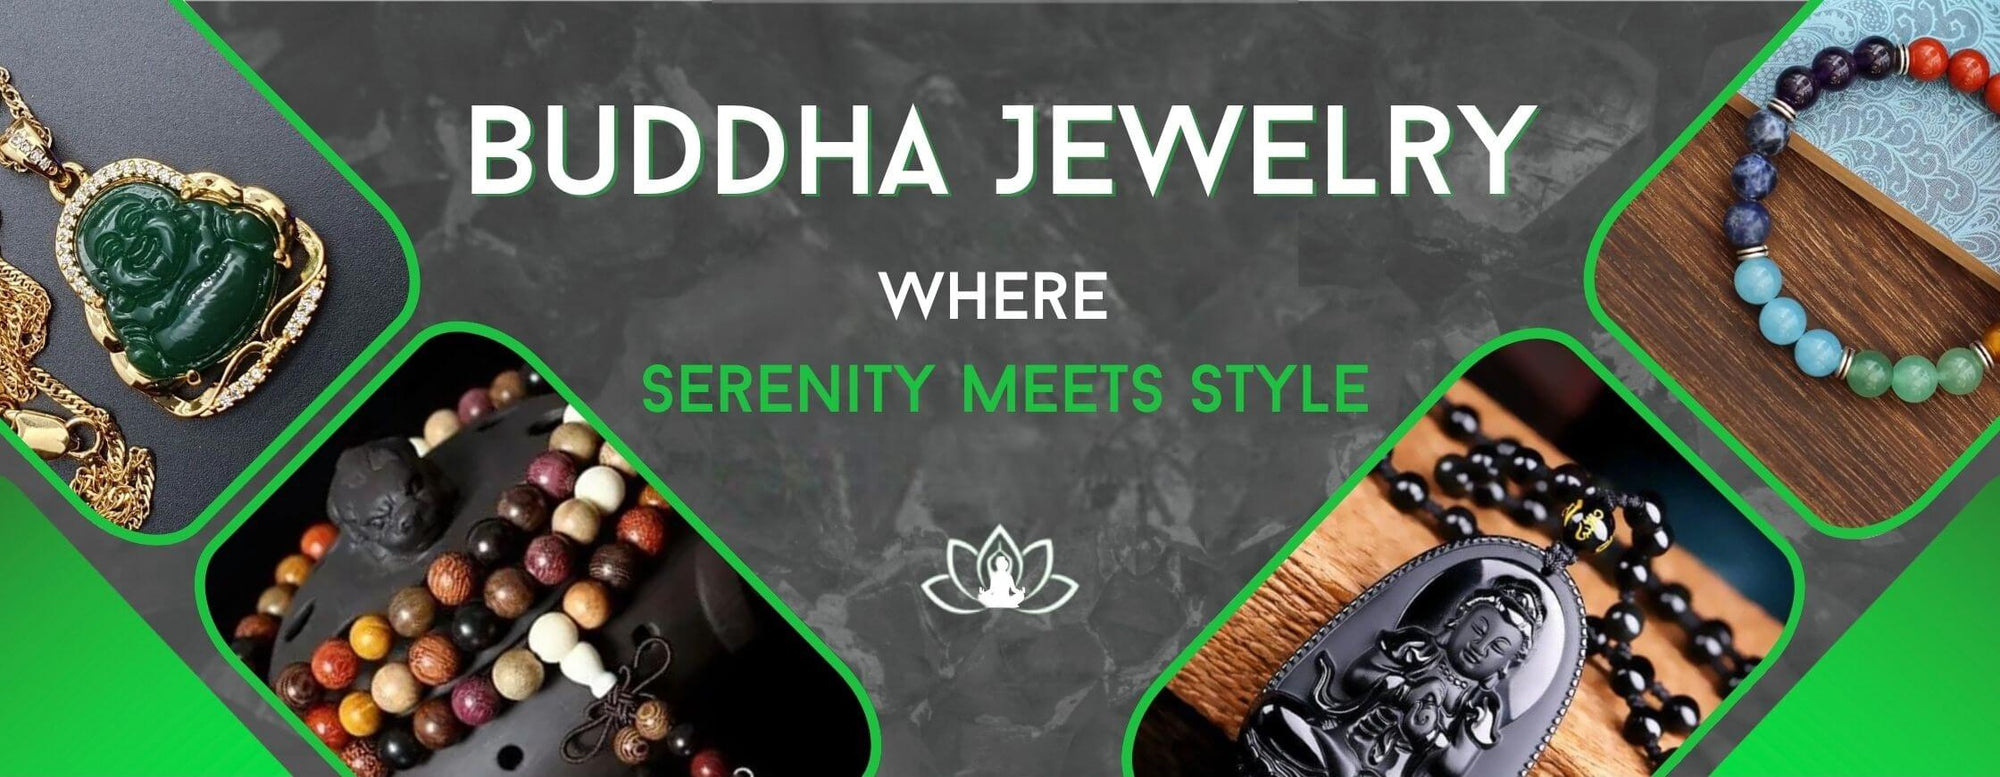 jewelry buddha banner